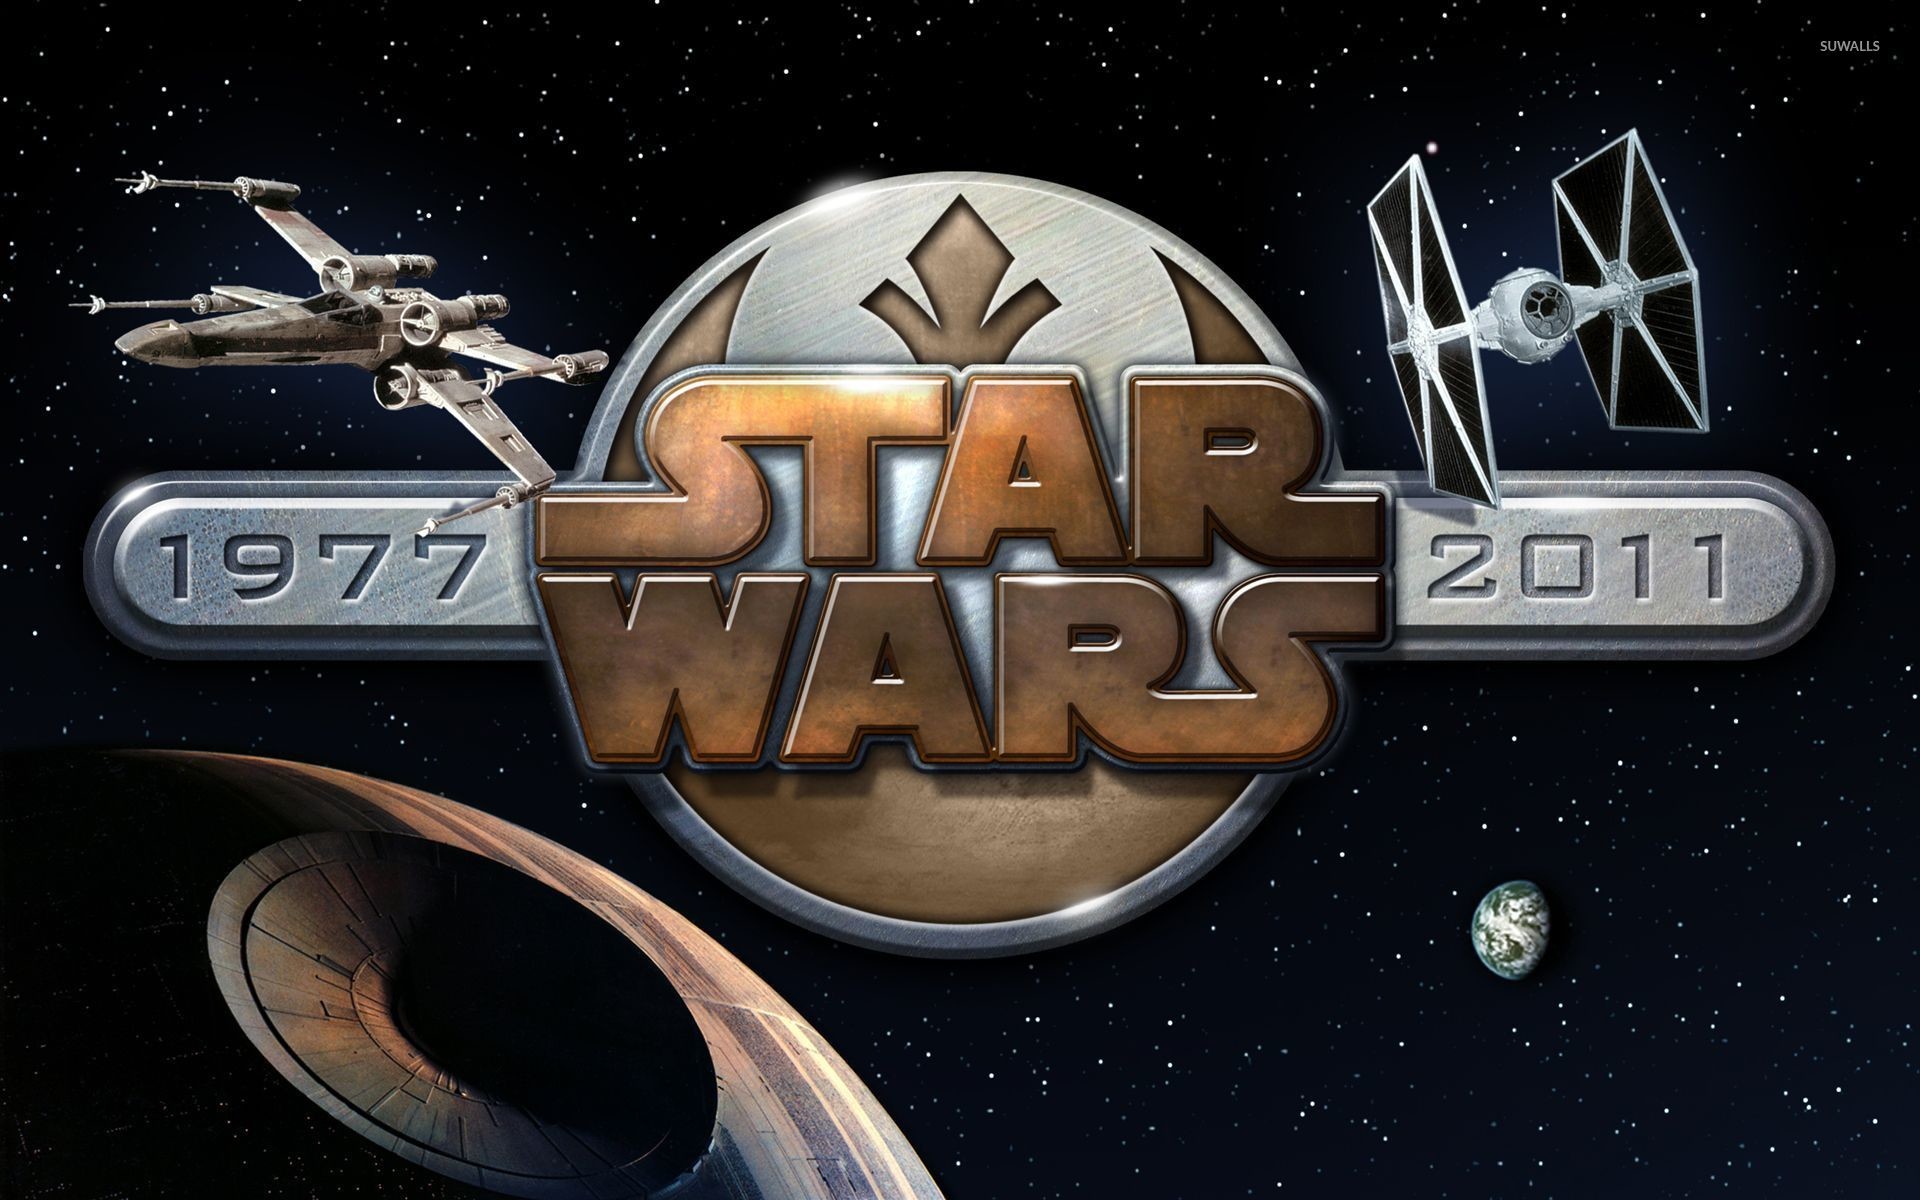 Star Wars metallic logo wallpaper